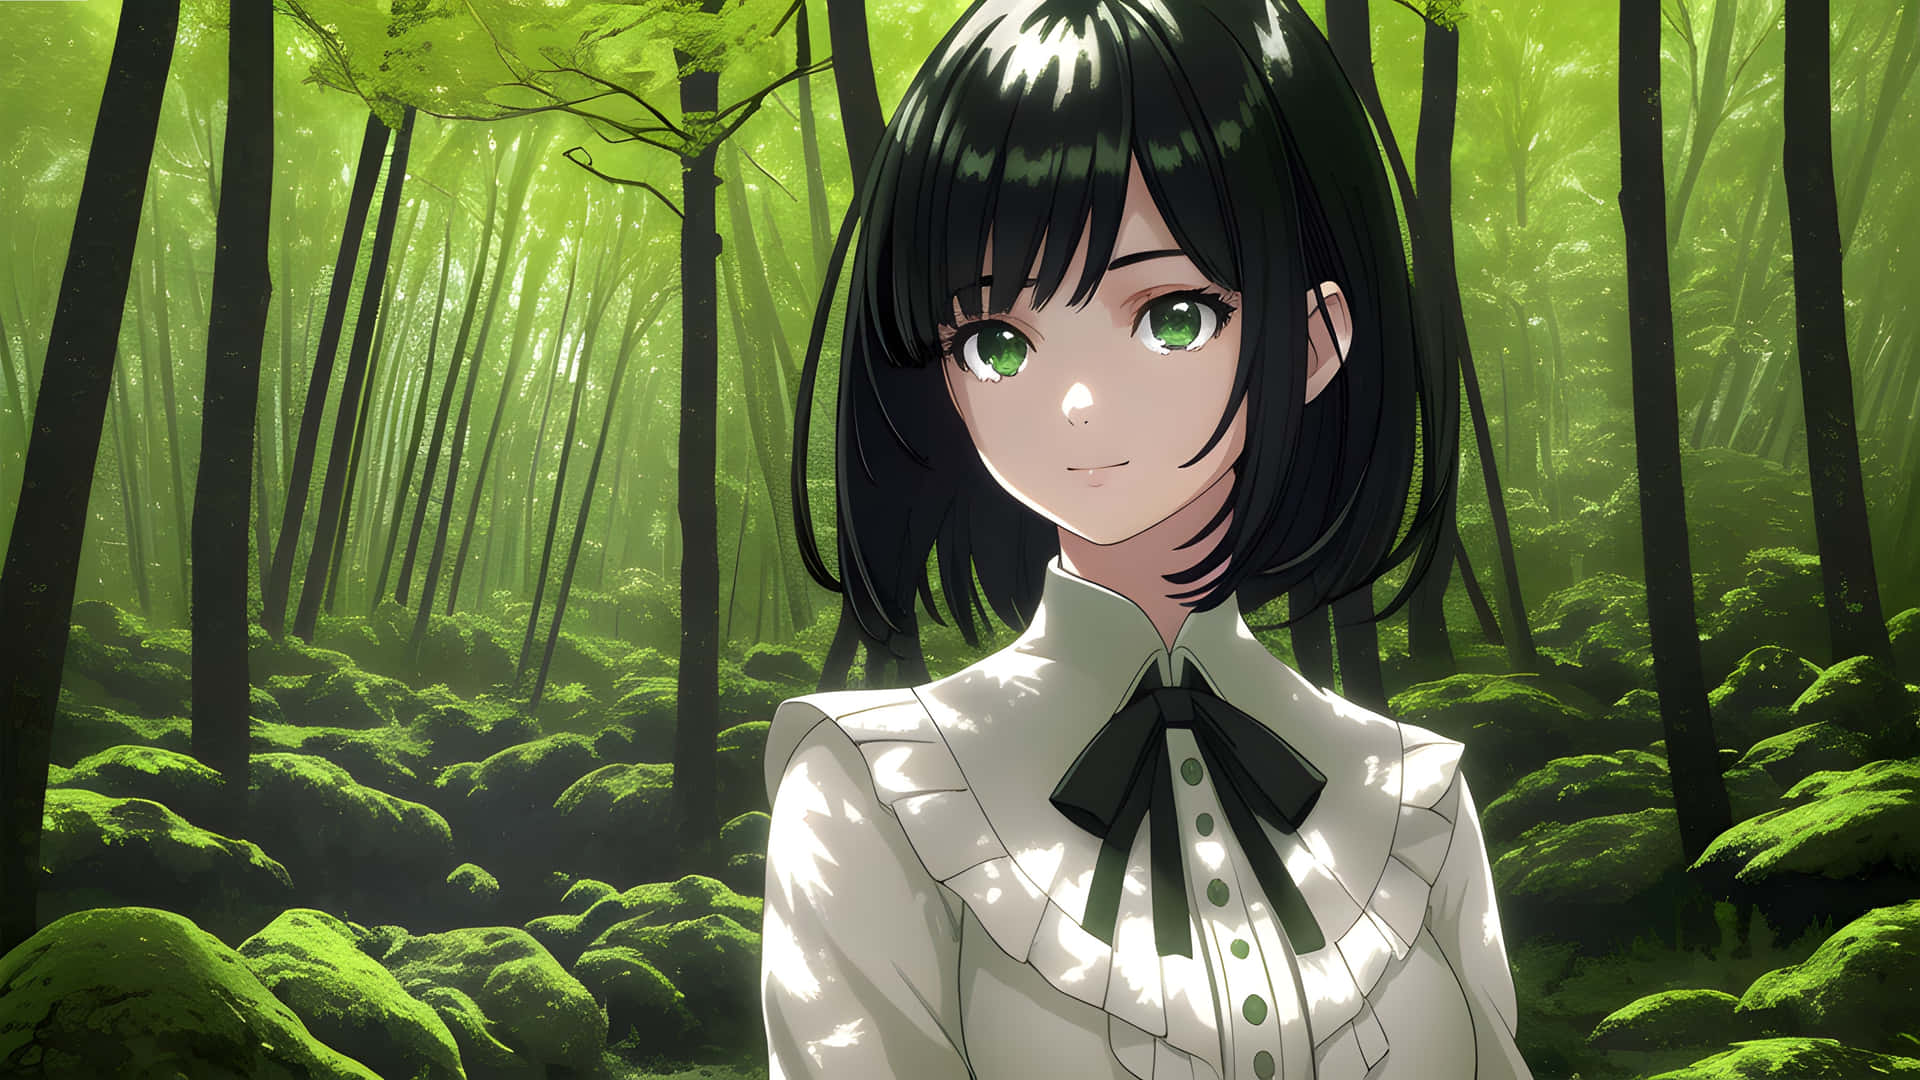 Enchanted Forest Anime Girl.jpg Wallpaper